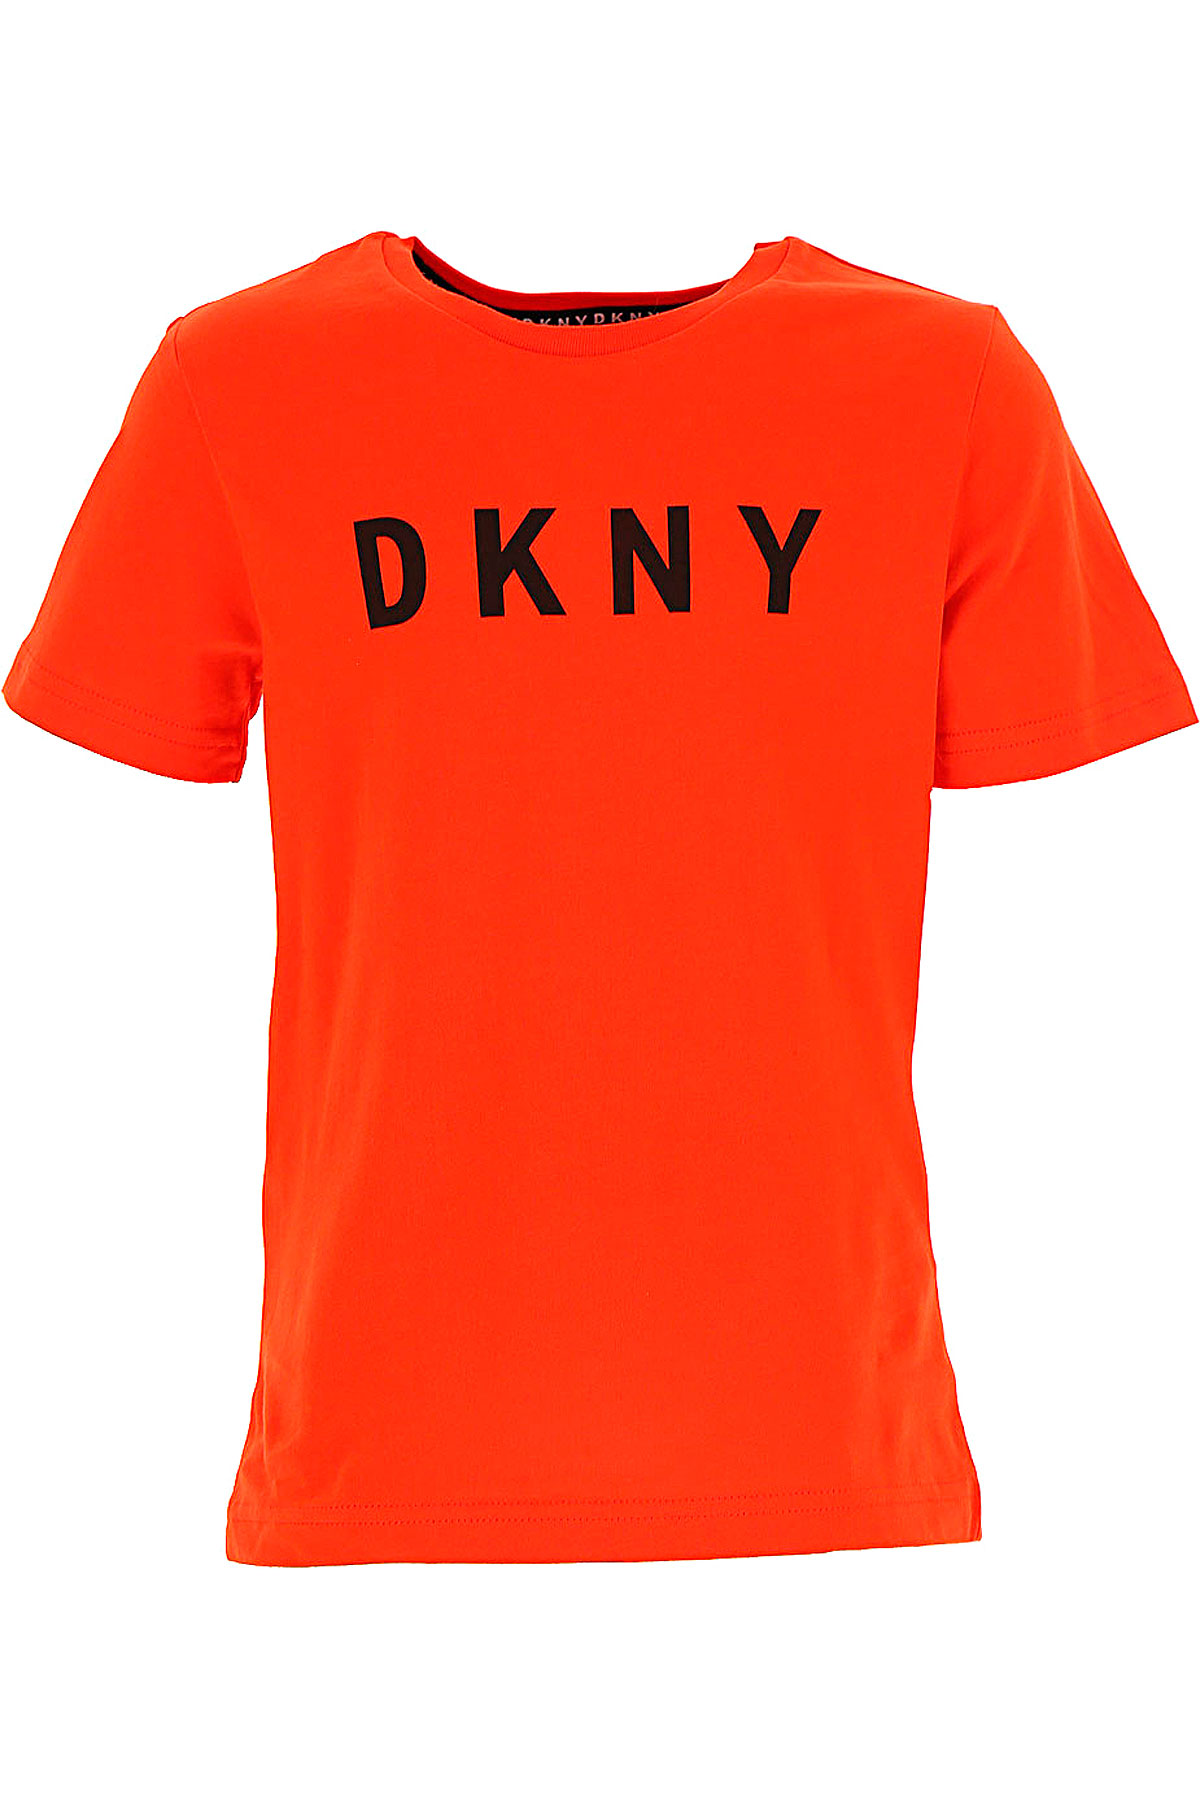 DKNY Kinder T-Shirt für Mädchen Günstig im Sale, Rot, Baumwolle, 2017, 14Y 8Y